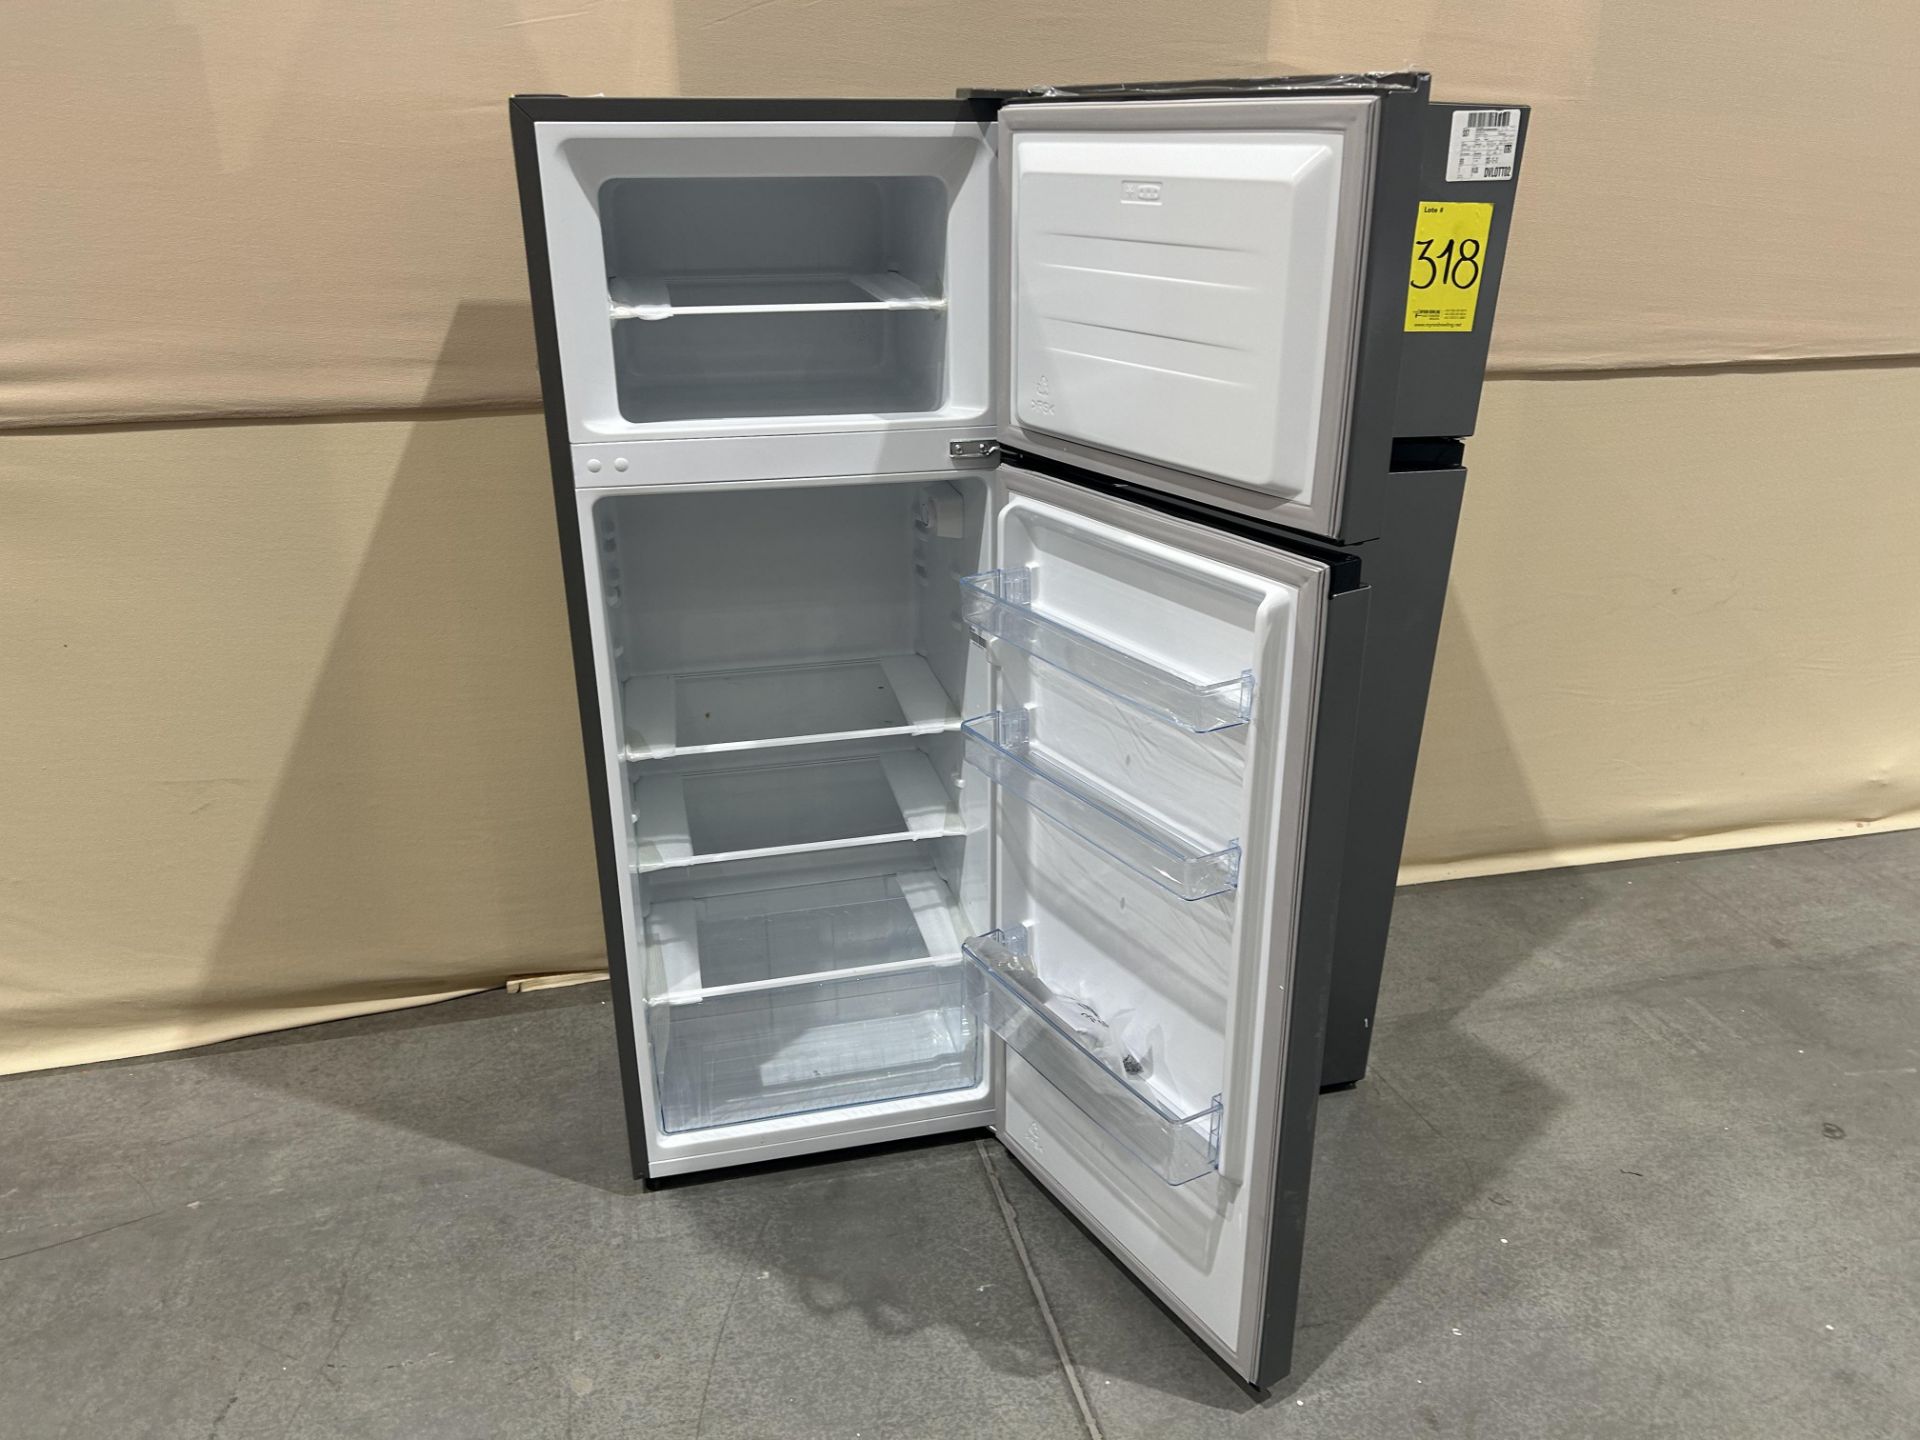 Lote de 2 refrigeradores contiene: 1 refrigerador Marca HISENSE, Modelo RT80D6AGX, Serie P10076, Co - Image 6 of 7